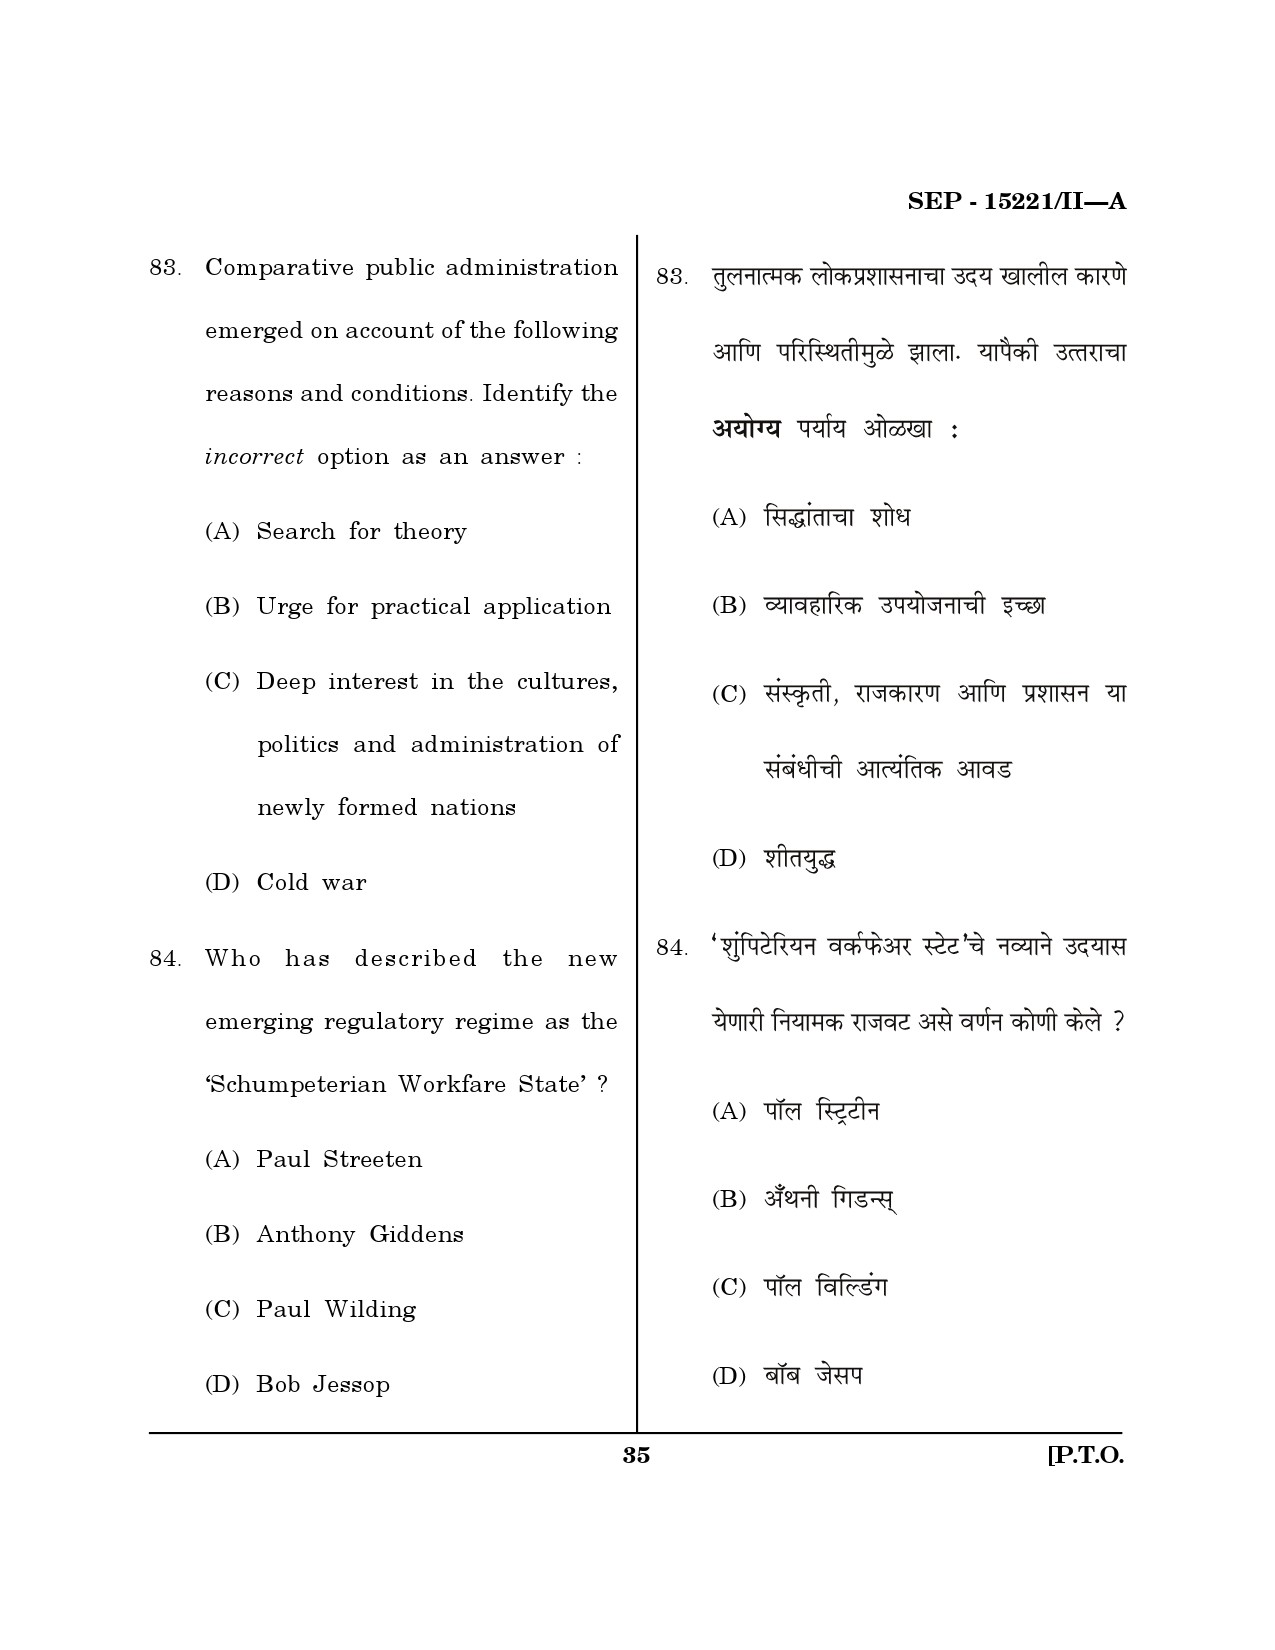 Maharashtra SET Political Science Exam Question Paper September 2021 34